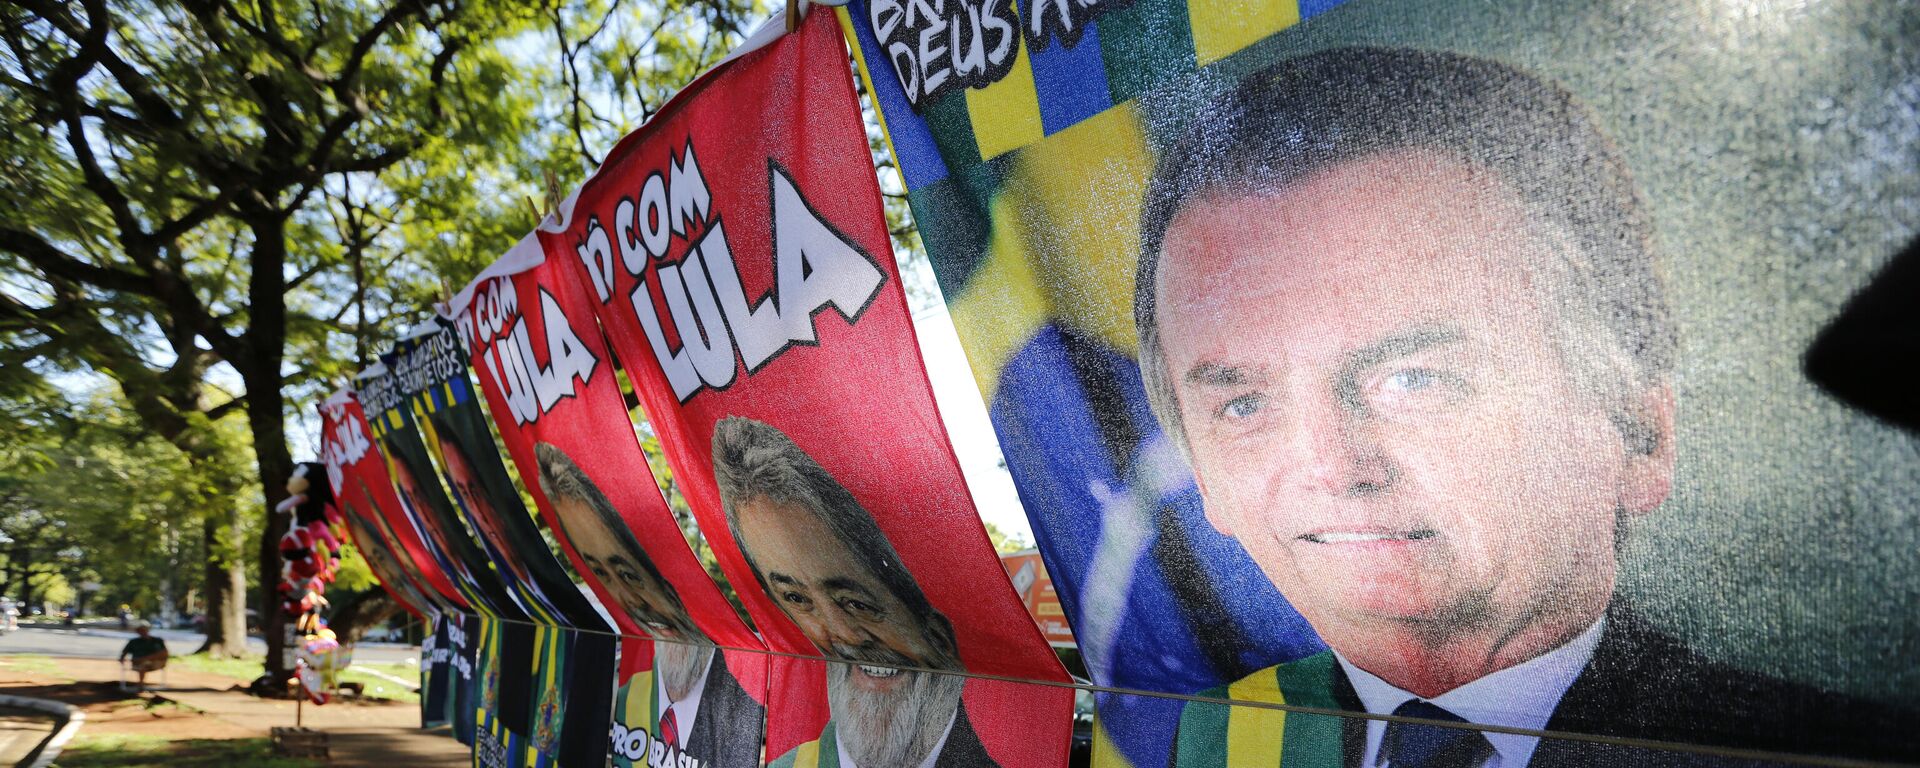 Vendedor ambulante vende toalhas com fotos do presidente Jair Bolsonaro (PL) e do ex-presidente Luiz Inácio Lula da Silva (PT) em Foz do Iguaçu (PR), em 11 de fevereiro de 2022 - Sputnik Brasil, 1920, 10.10.2022